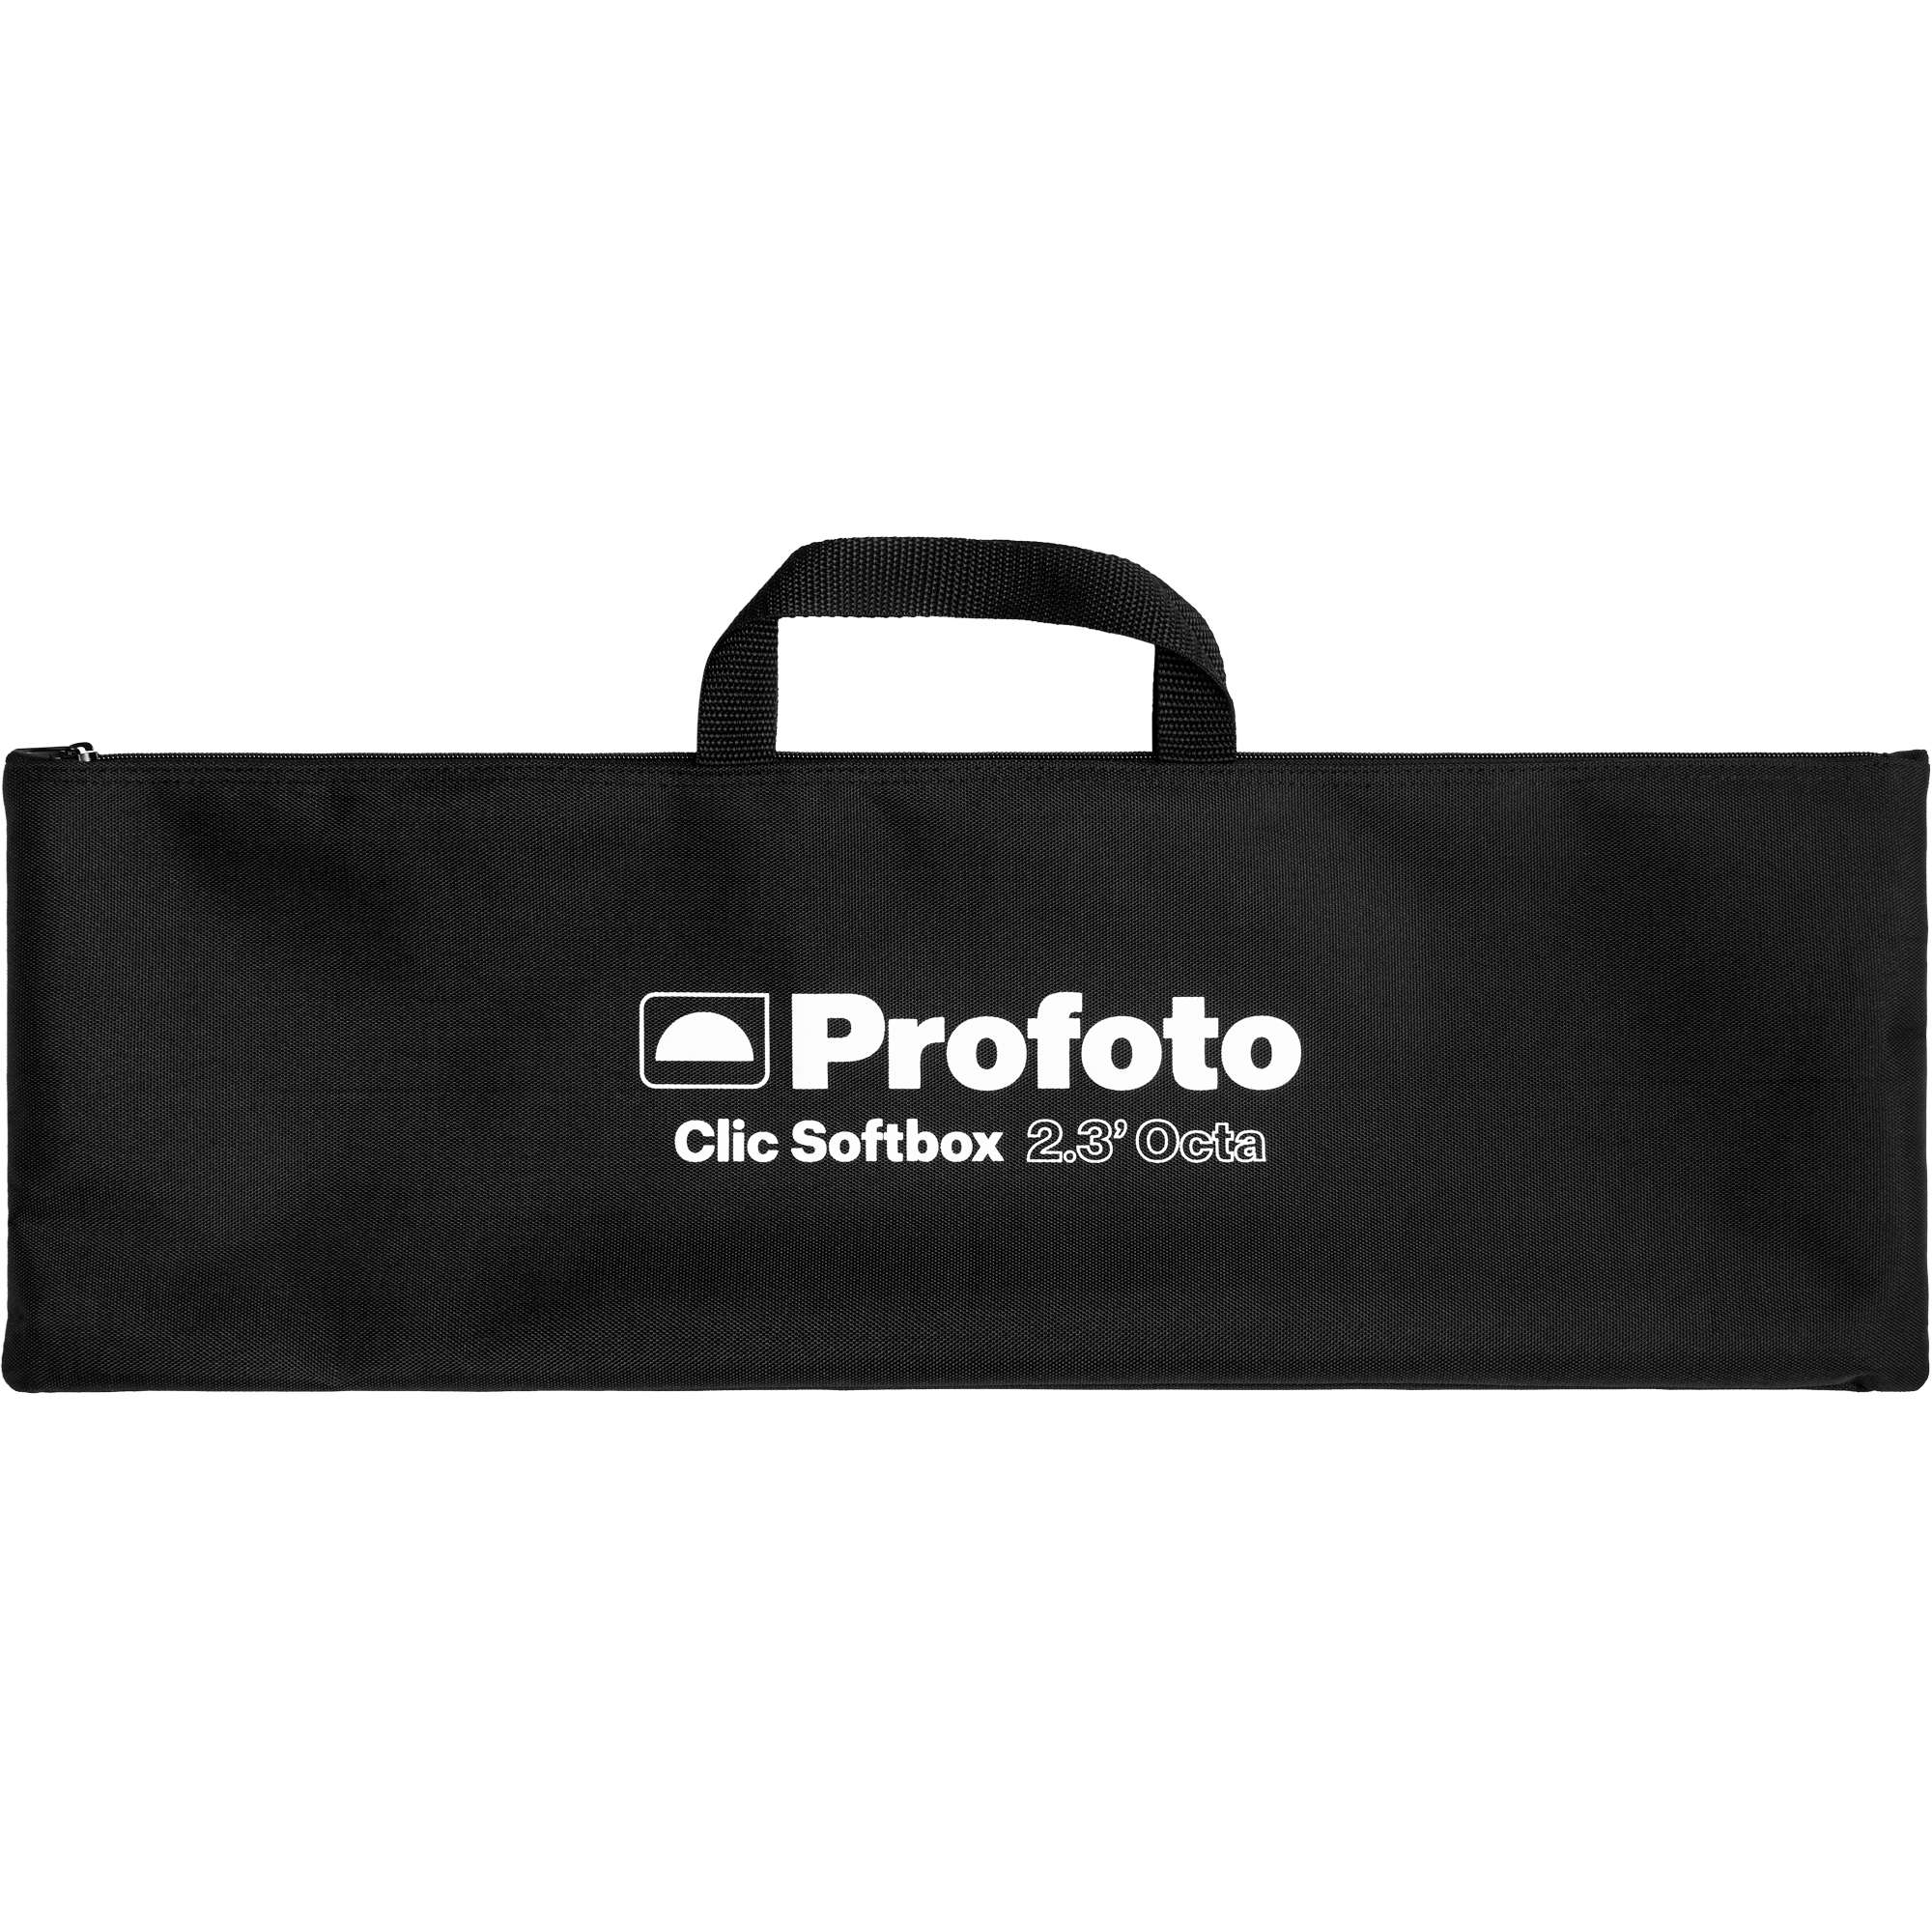 Profoto Clic Softbox 2.3' (70cm) Octa